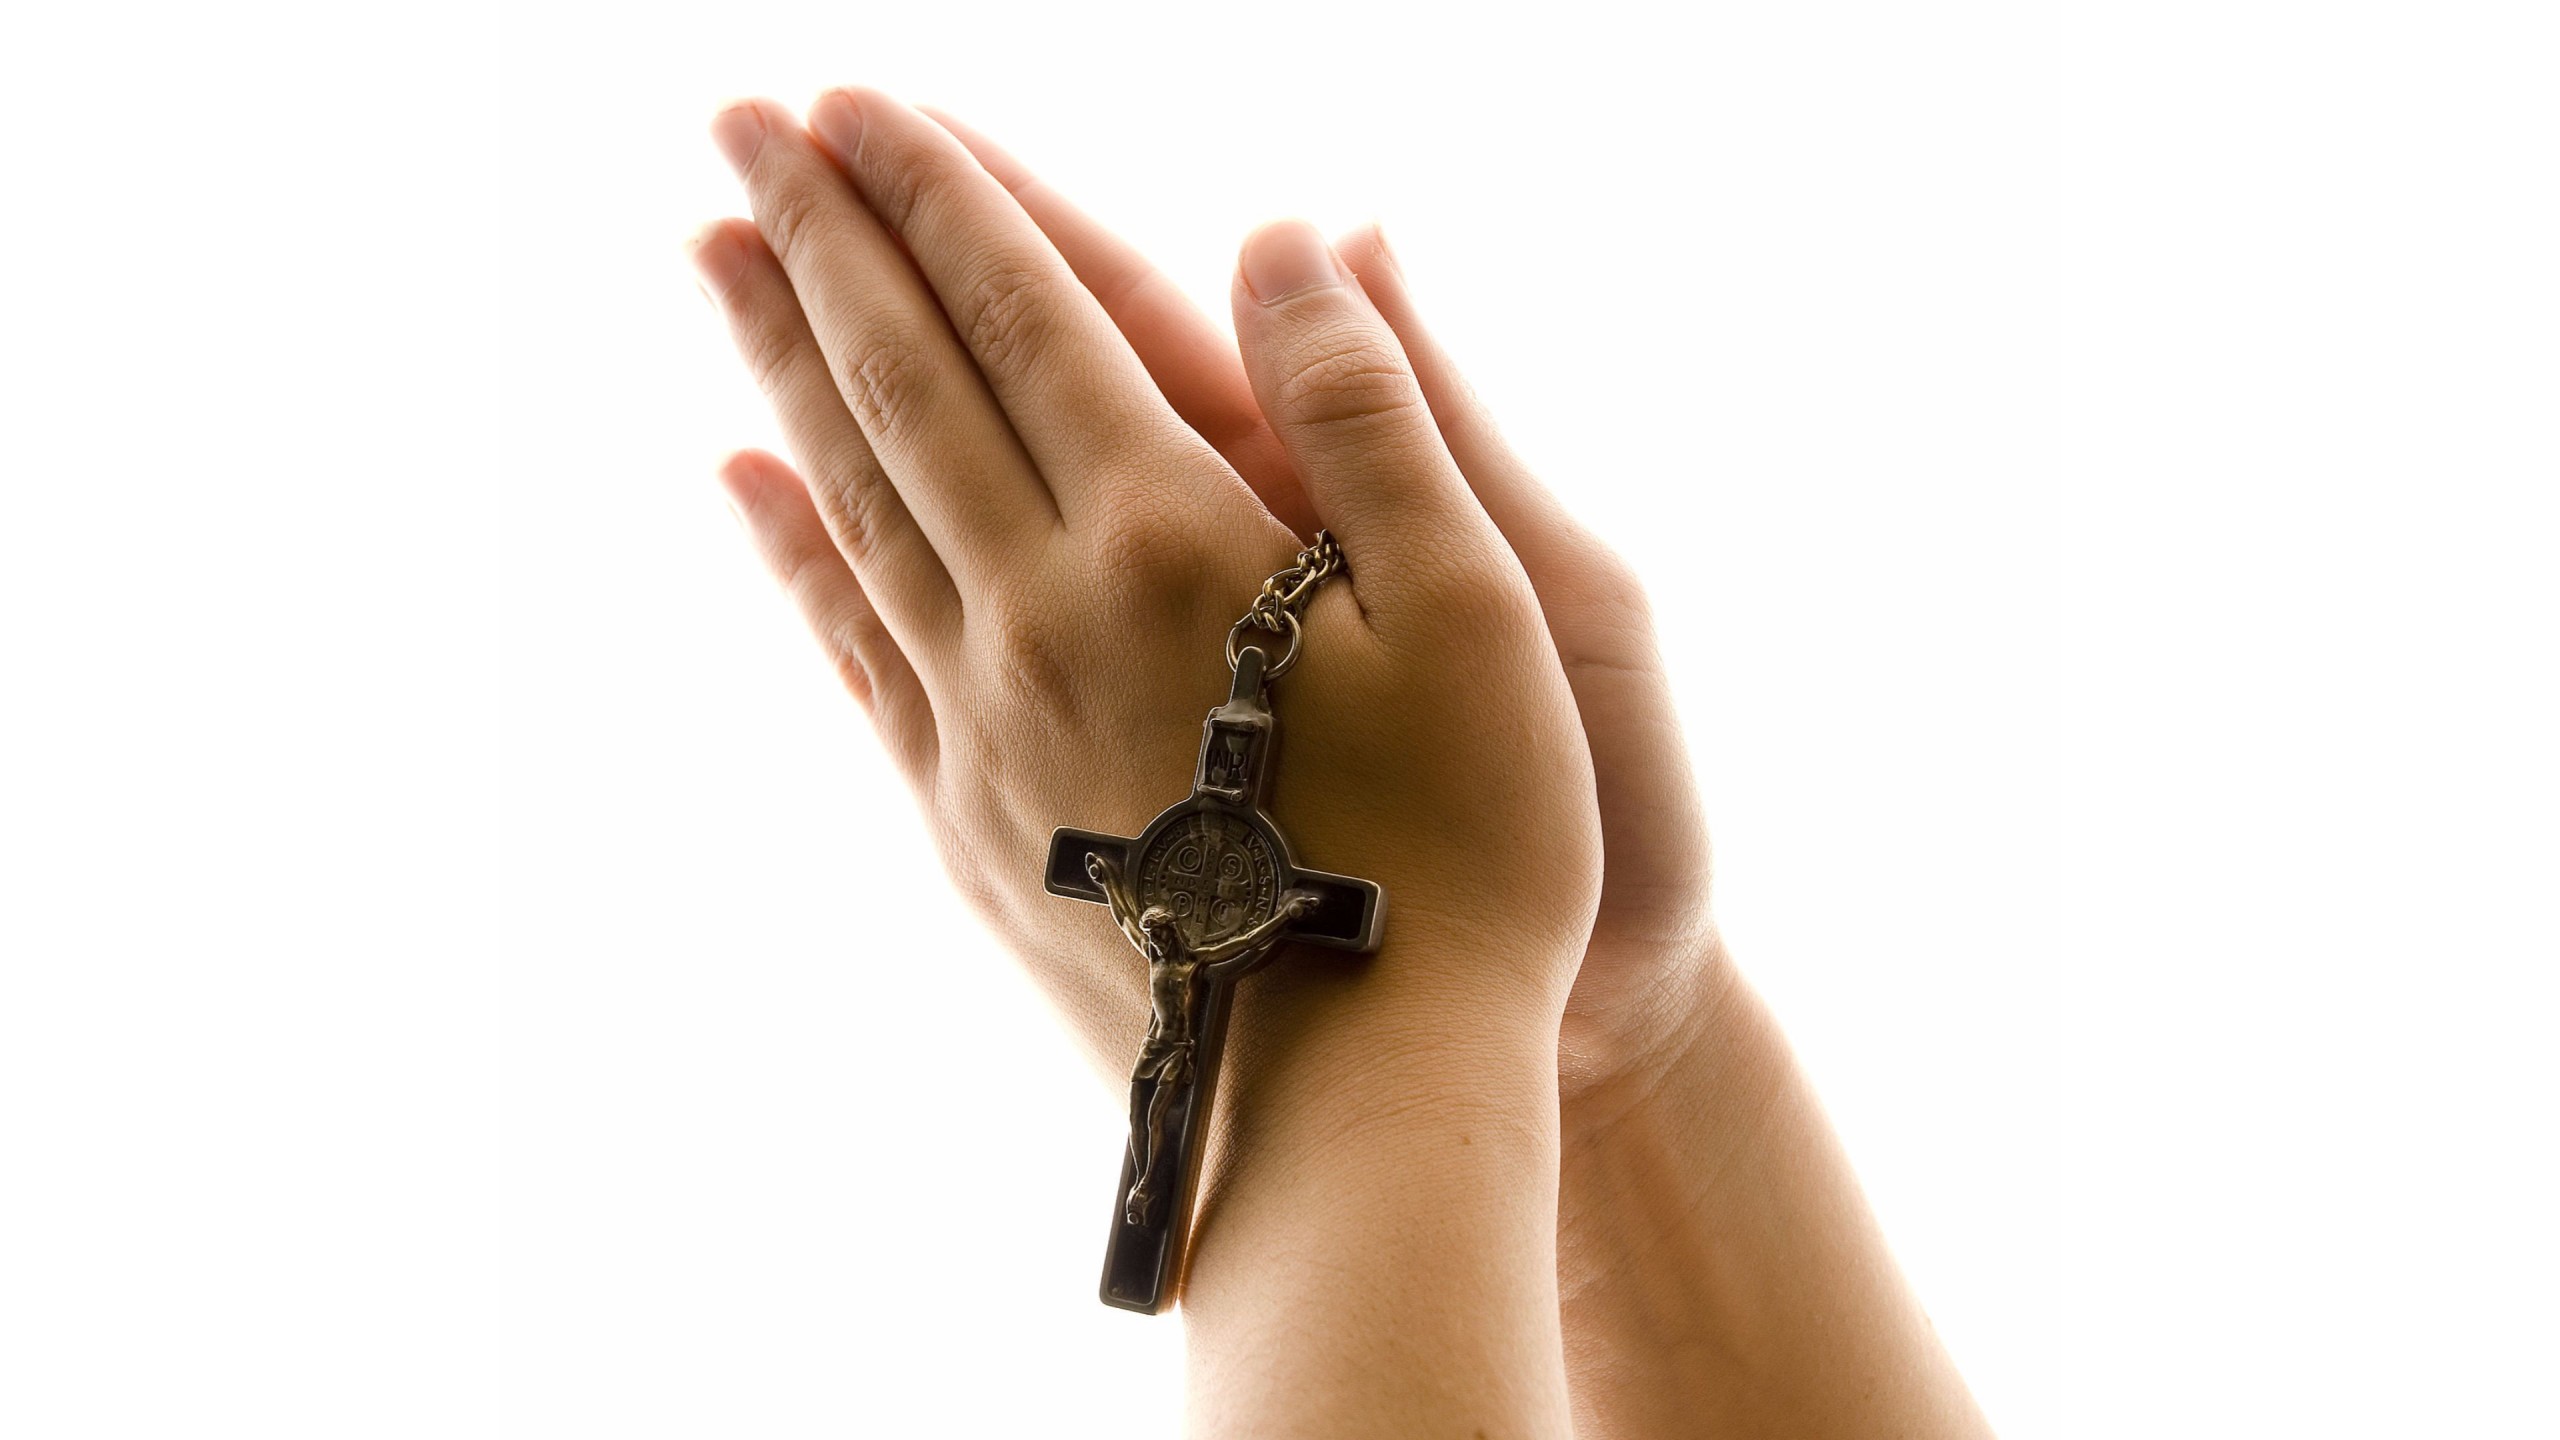 기도 손 벽지,손,손목,몸짓,종교적인 물건,상징